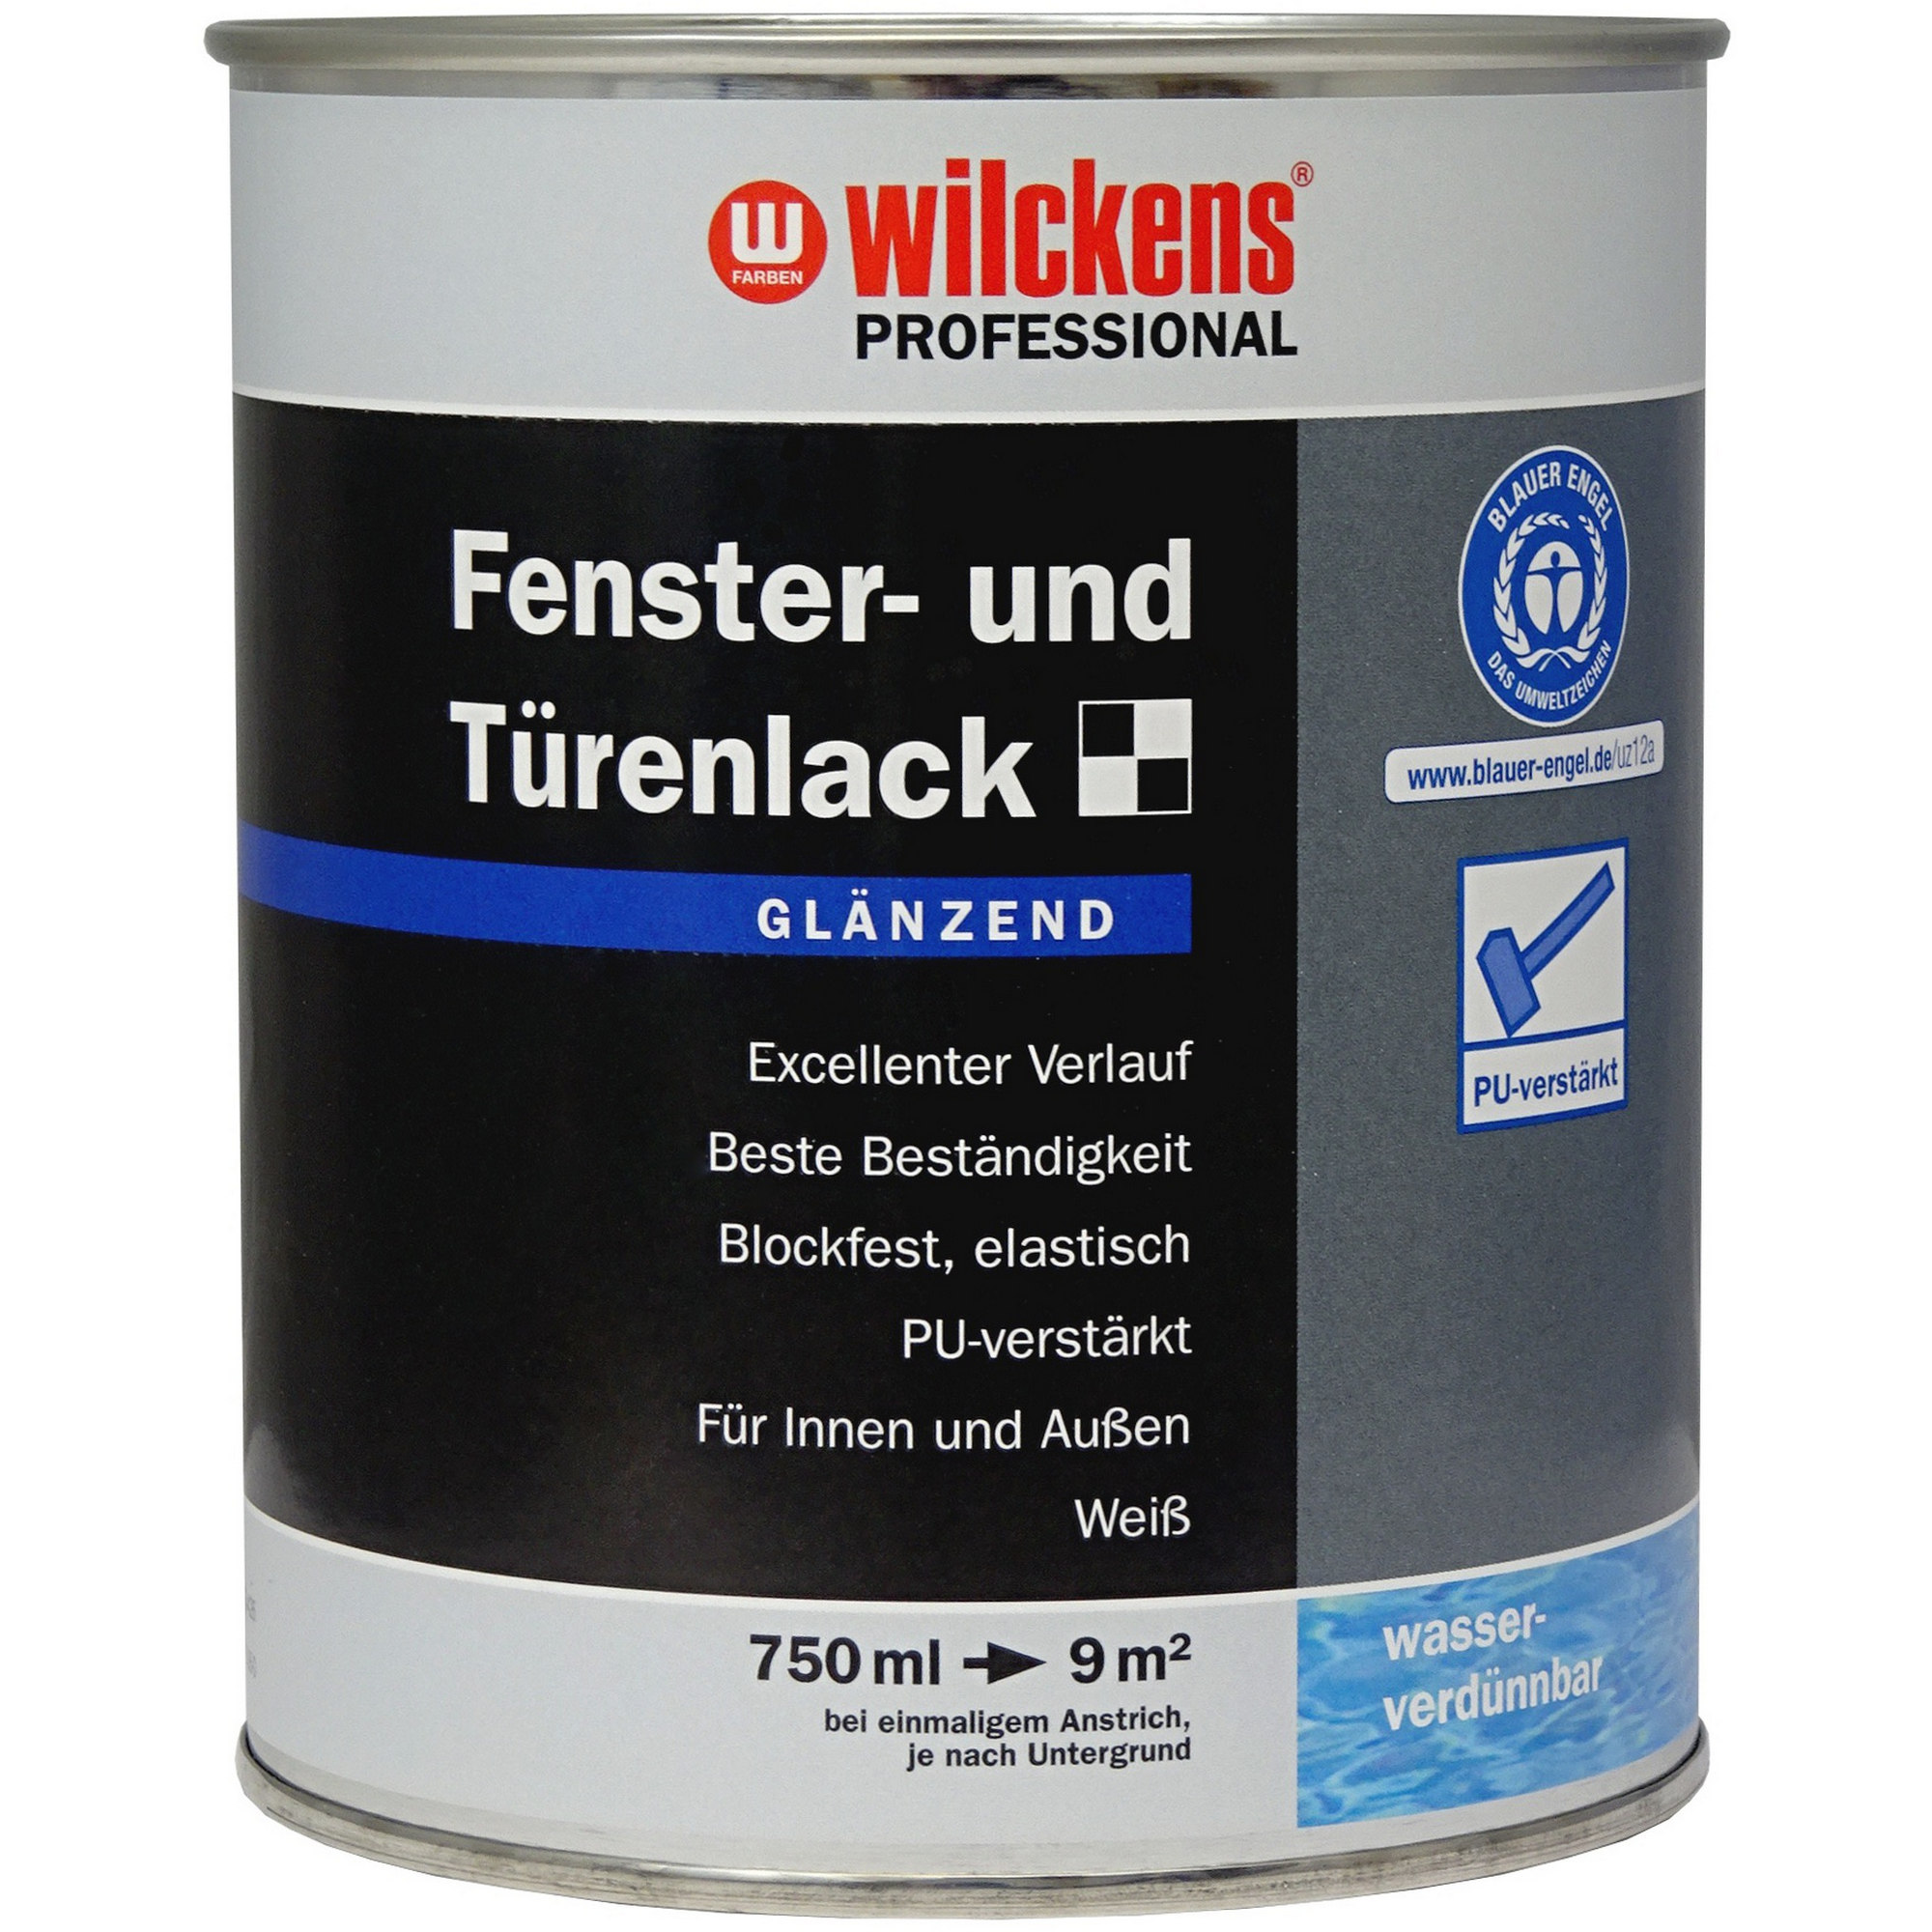 Fenster- & Türenlack 'Professional' weiß glänzend 750 ml + product picture